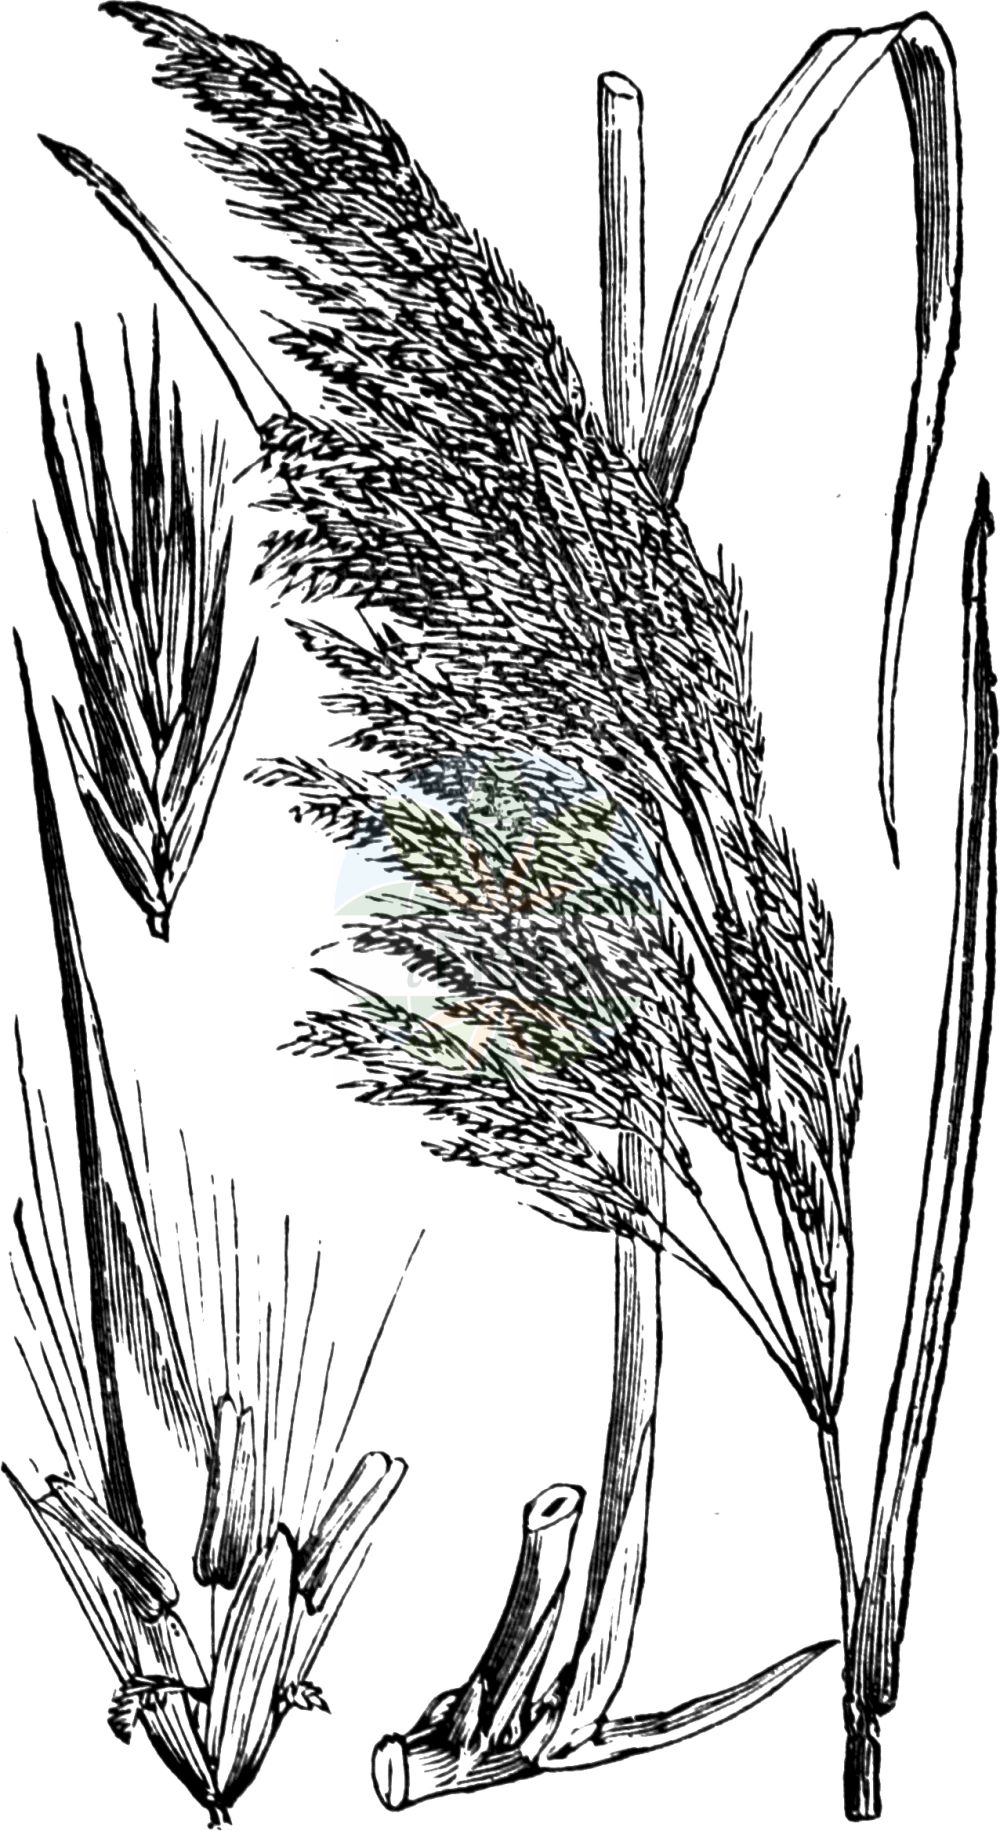 Historische Abbildung von Phragmites australis (Gewöhnliches Schilf - Common Reed). Das Bild zeigt Blatt, Bluete, Frucht und Same. ---- Historical Drawing of Phragmites australis (Gewöhnliches Schilf - Common Reed). The image is showing leaf, flower, fruit and seed.(Phragmites australis,Gewöhnliches Schilf,Common Reed,Arundo australis,Arundo graeca,Arundo phragmites,Phragmites australis,Phragmites communis,Phragmites gigantea,Phragmites loscosii,Phragmites pumila,Phragmites vulgaris,Gewoehnliches Schilf,Schilf,Common Reed,Reed,Phragmites,Schilf,Reed,Poaceae,Süßgräser,Grass family,Blatt,Bluete,Frucht,Same,leaf,flower,fruit,seed,Fitch et al. (1880))